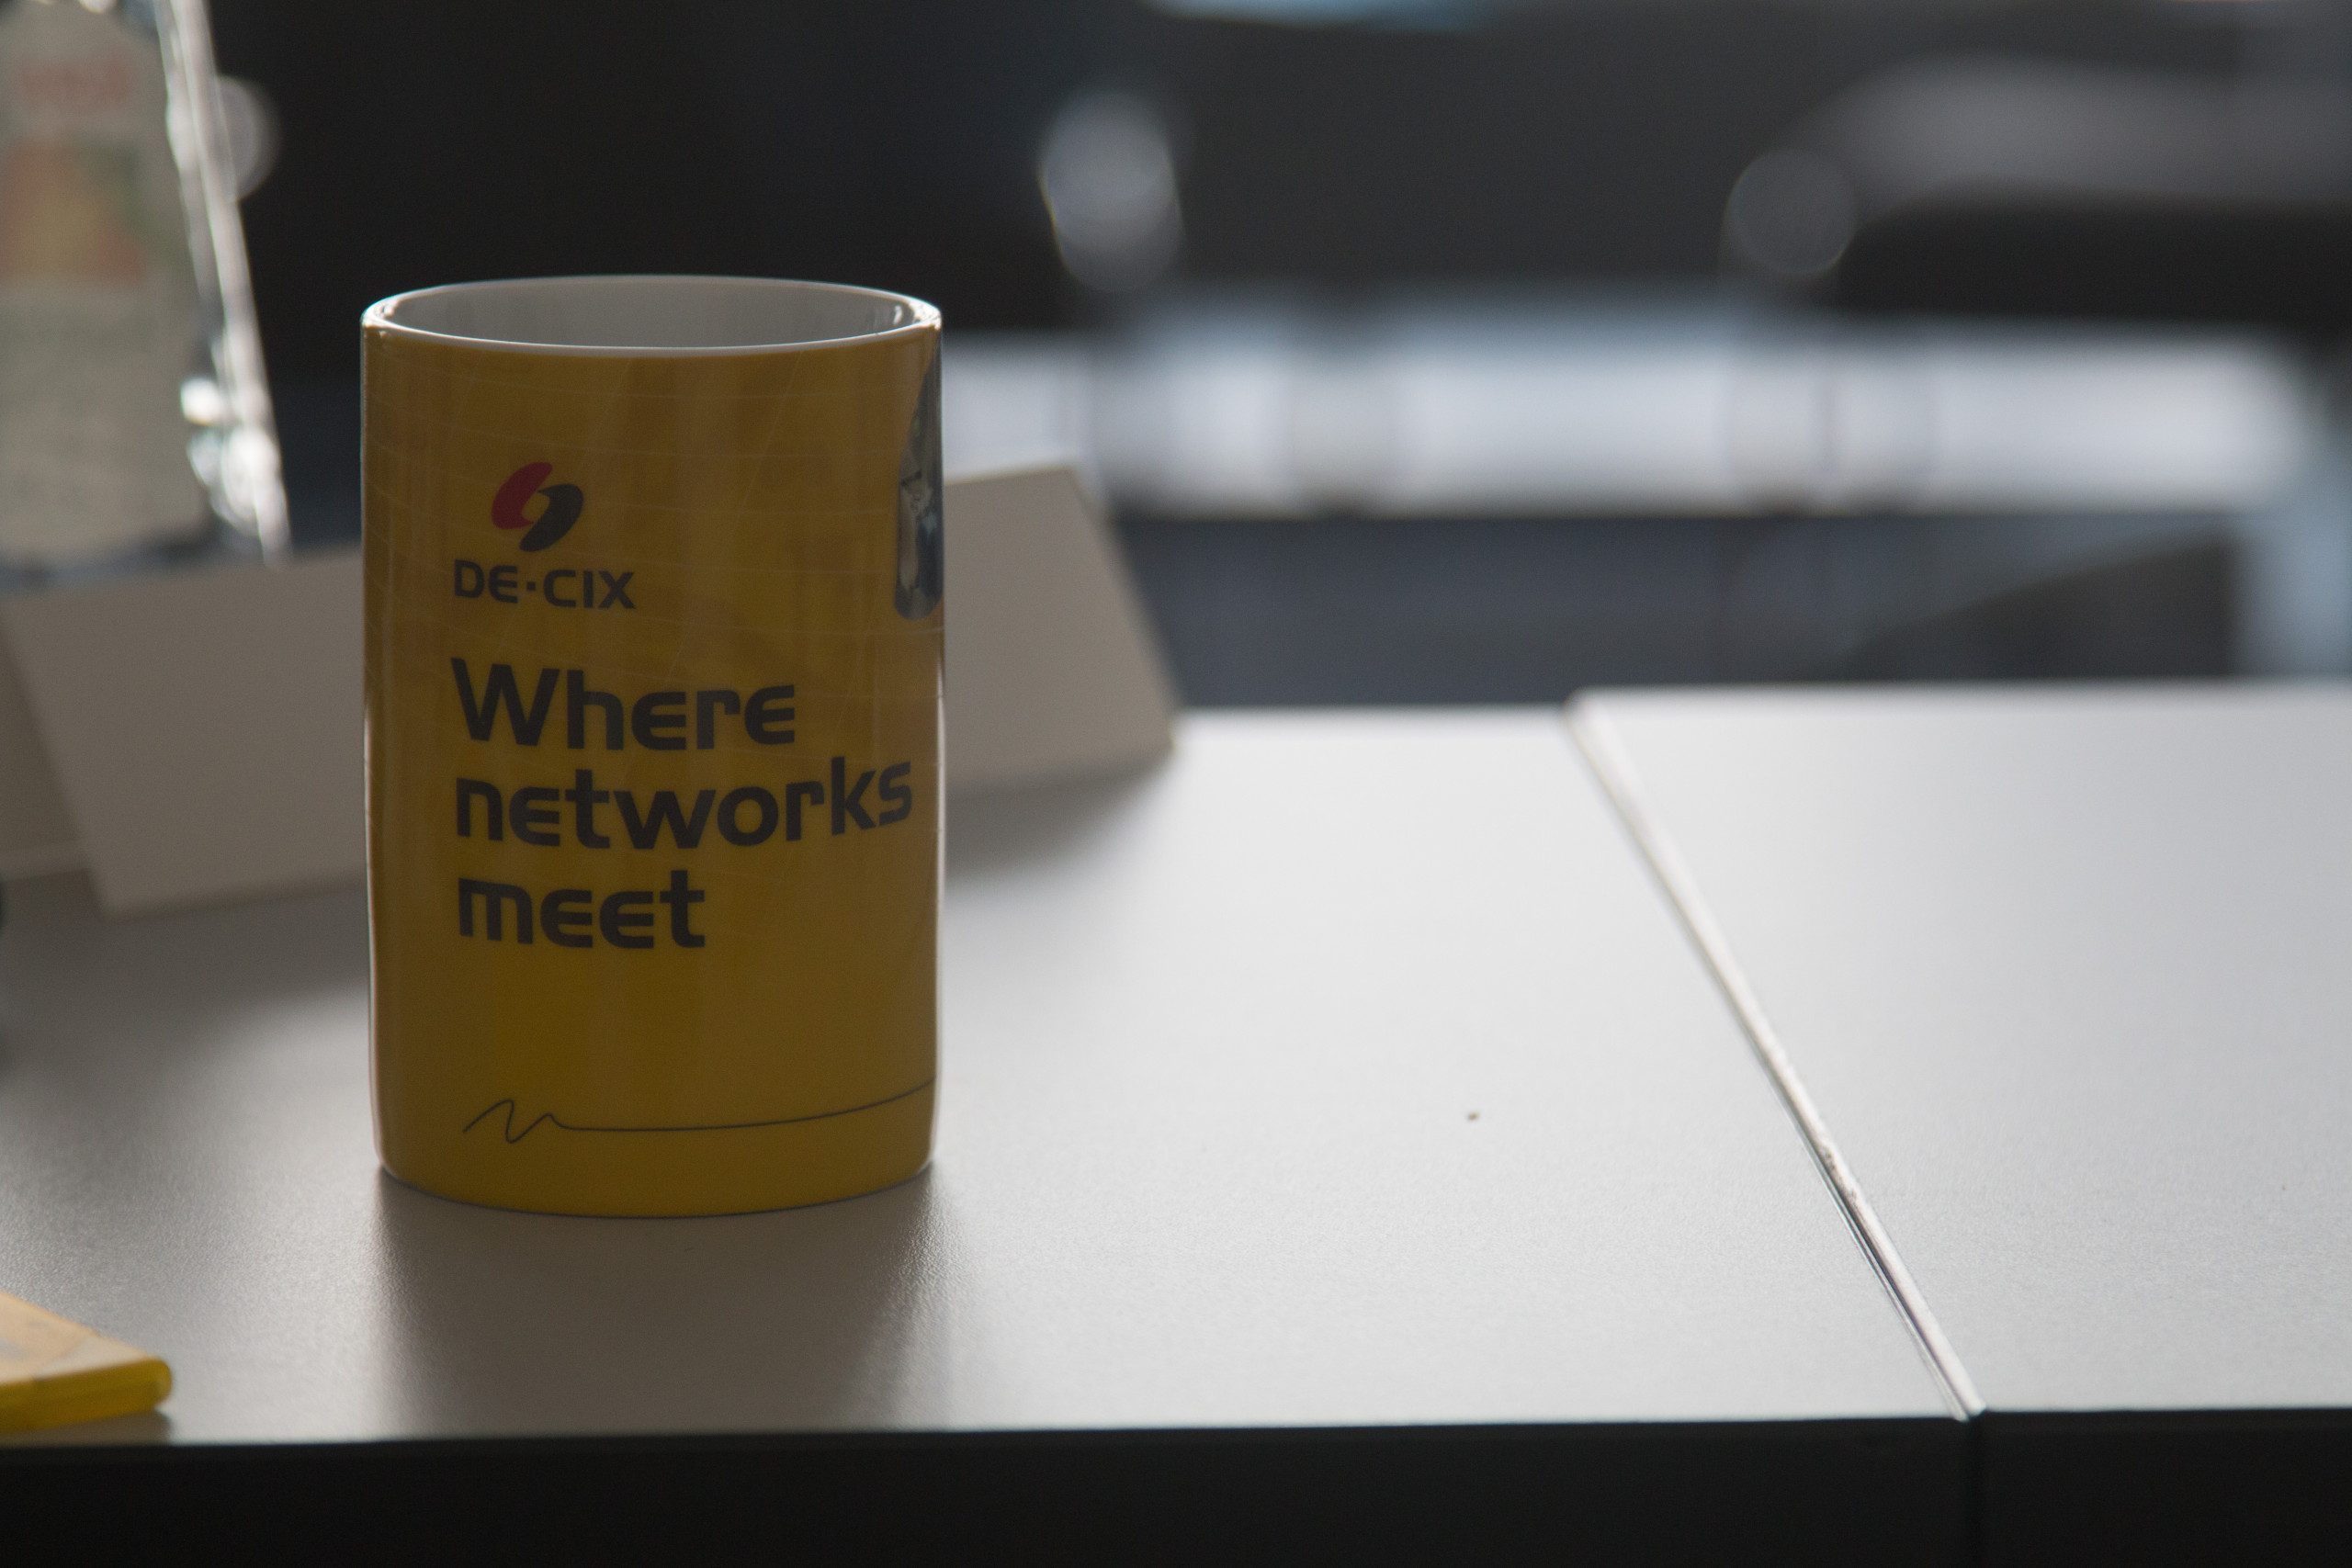 Ein Kaffeebecher mit der Aufschrift "Where networks meet"